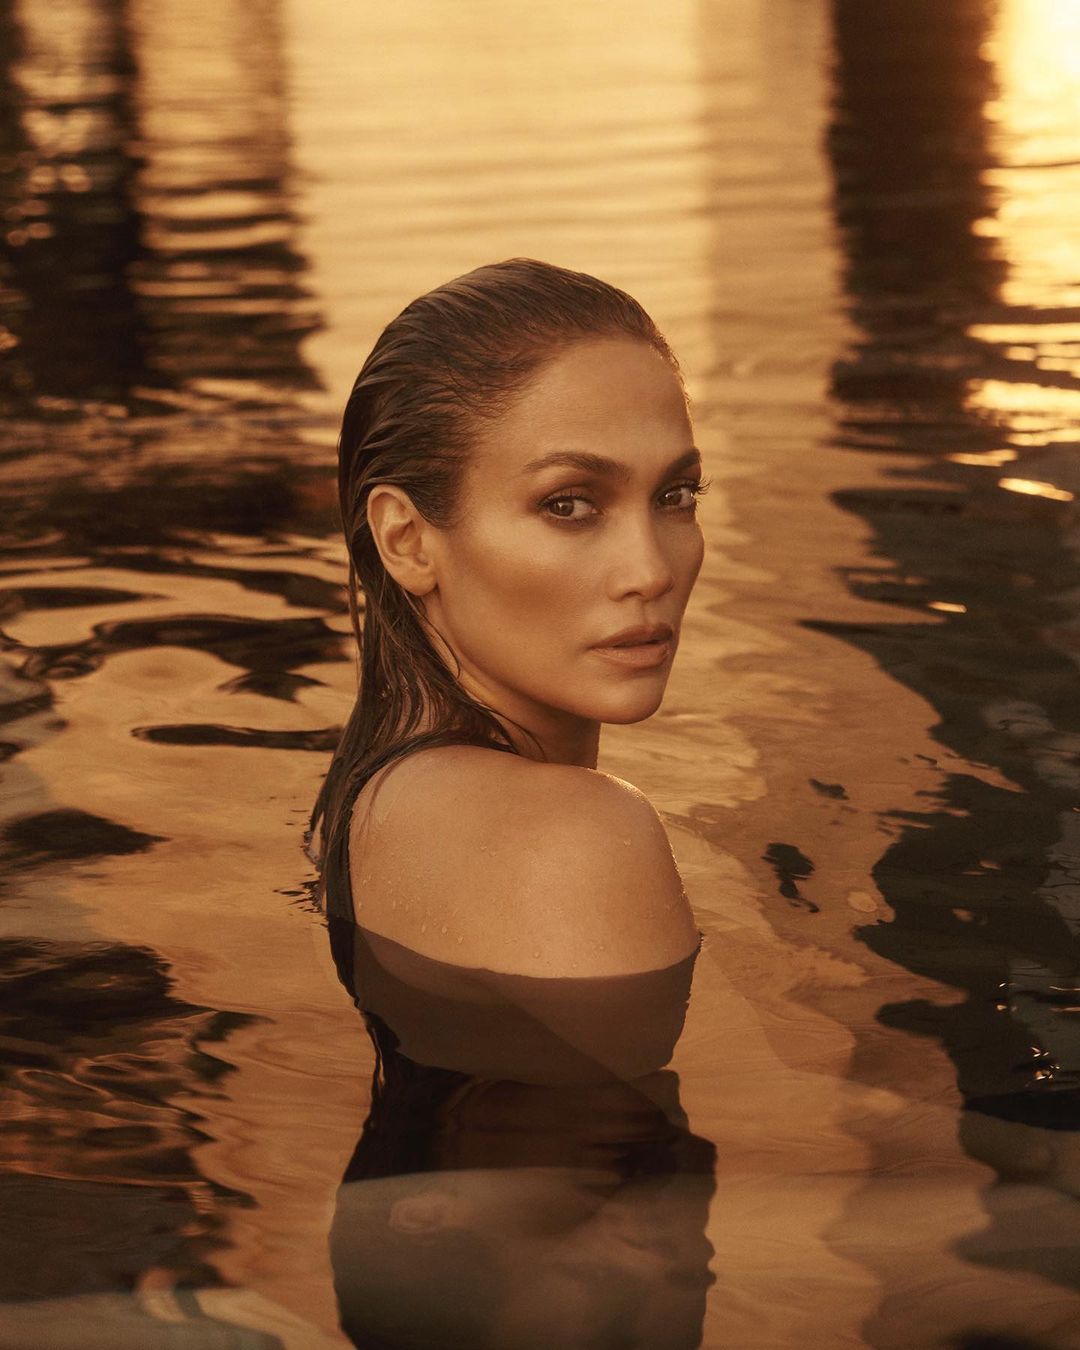 Rạo rực với bộ ảnh bán nude của Jennifer Lopez  đánh dấu tuổi 53